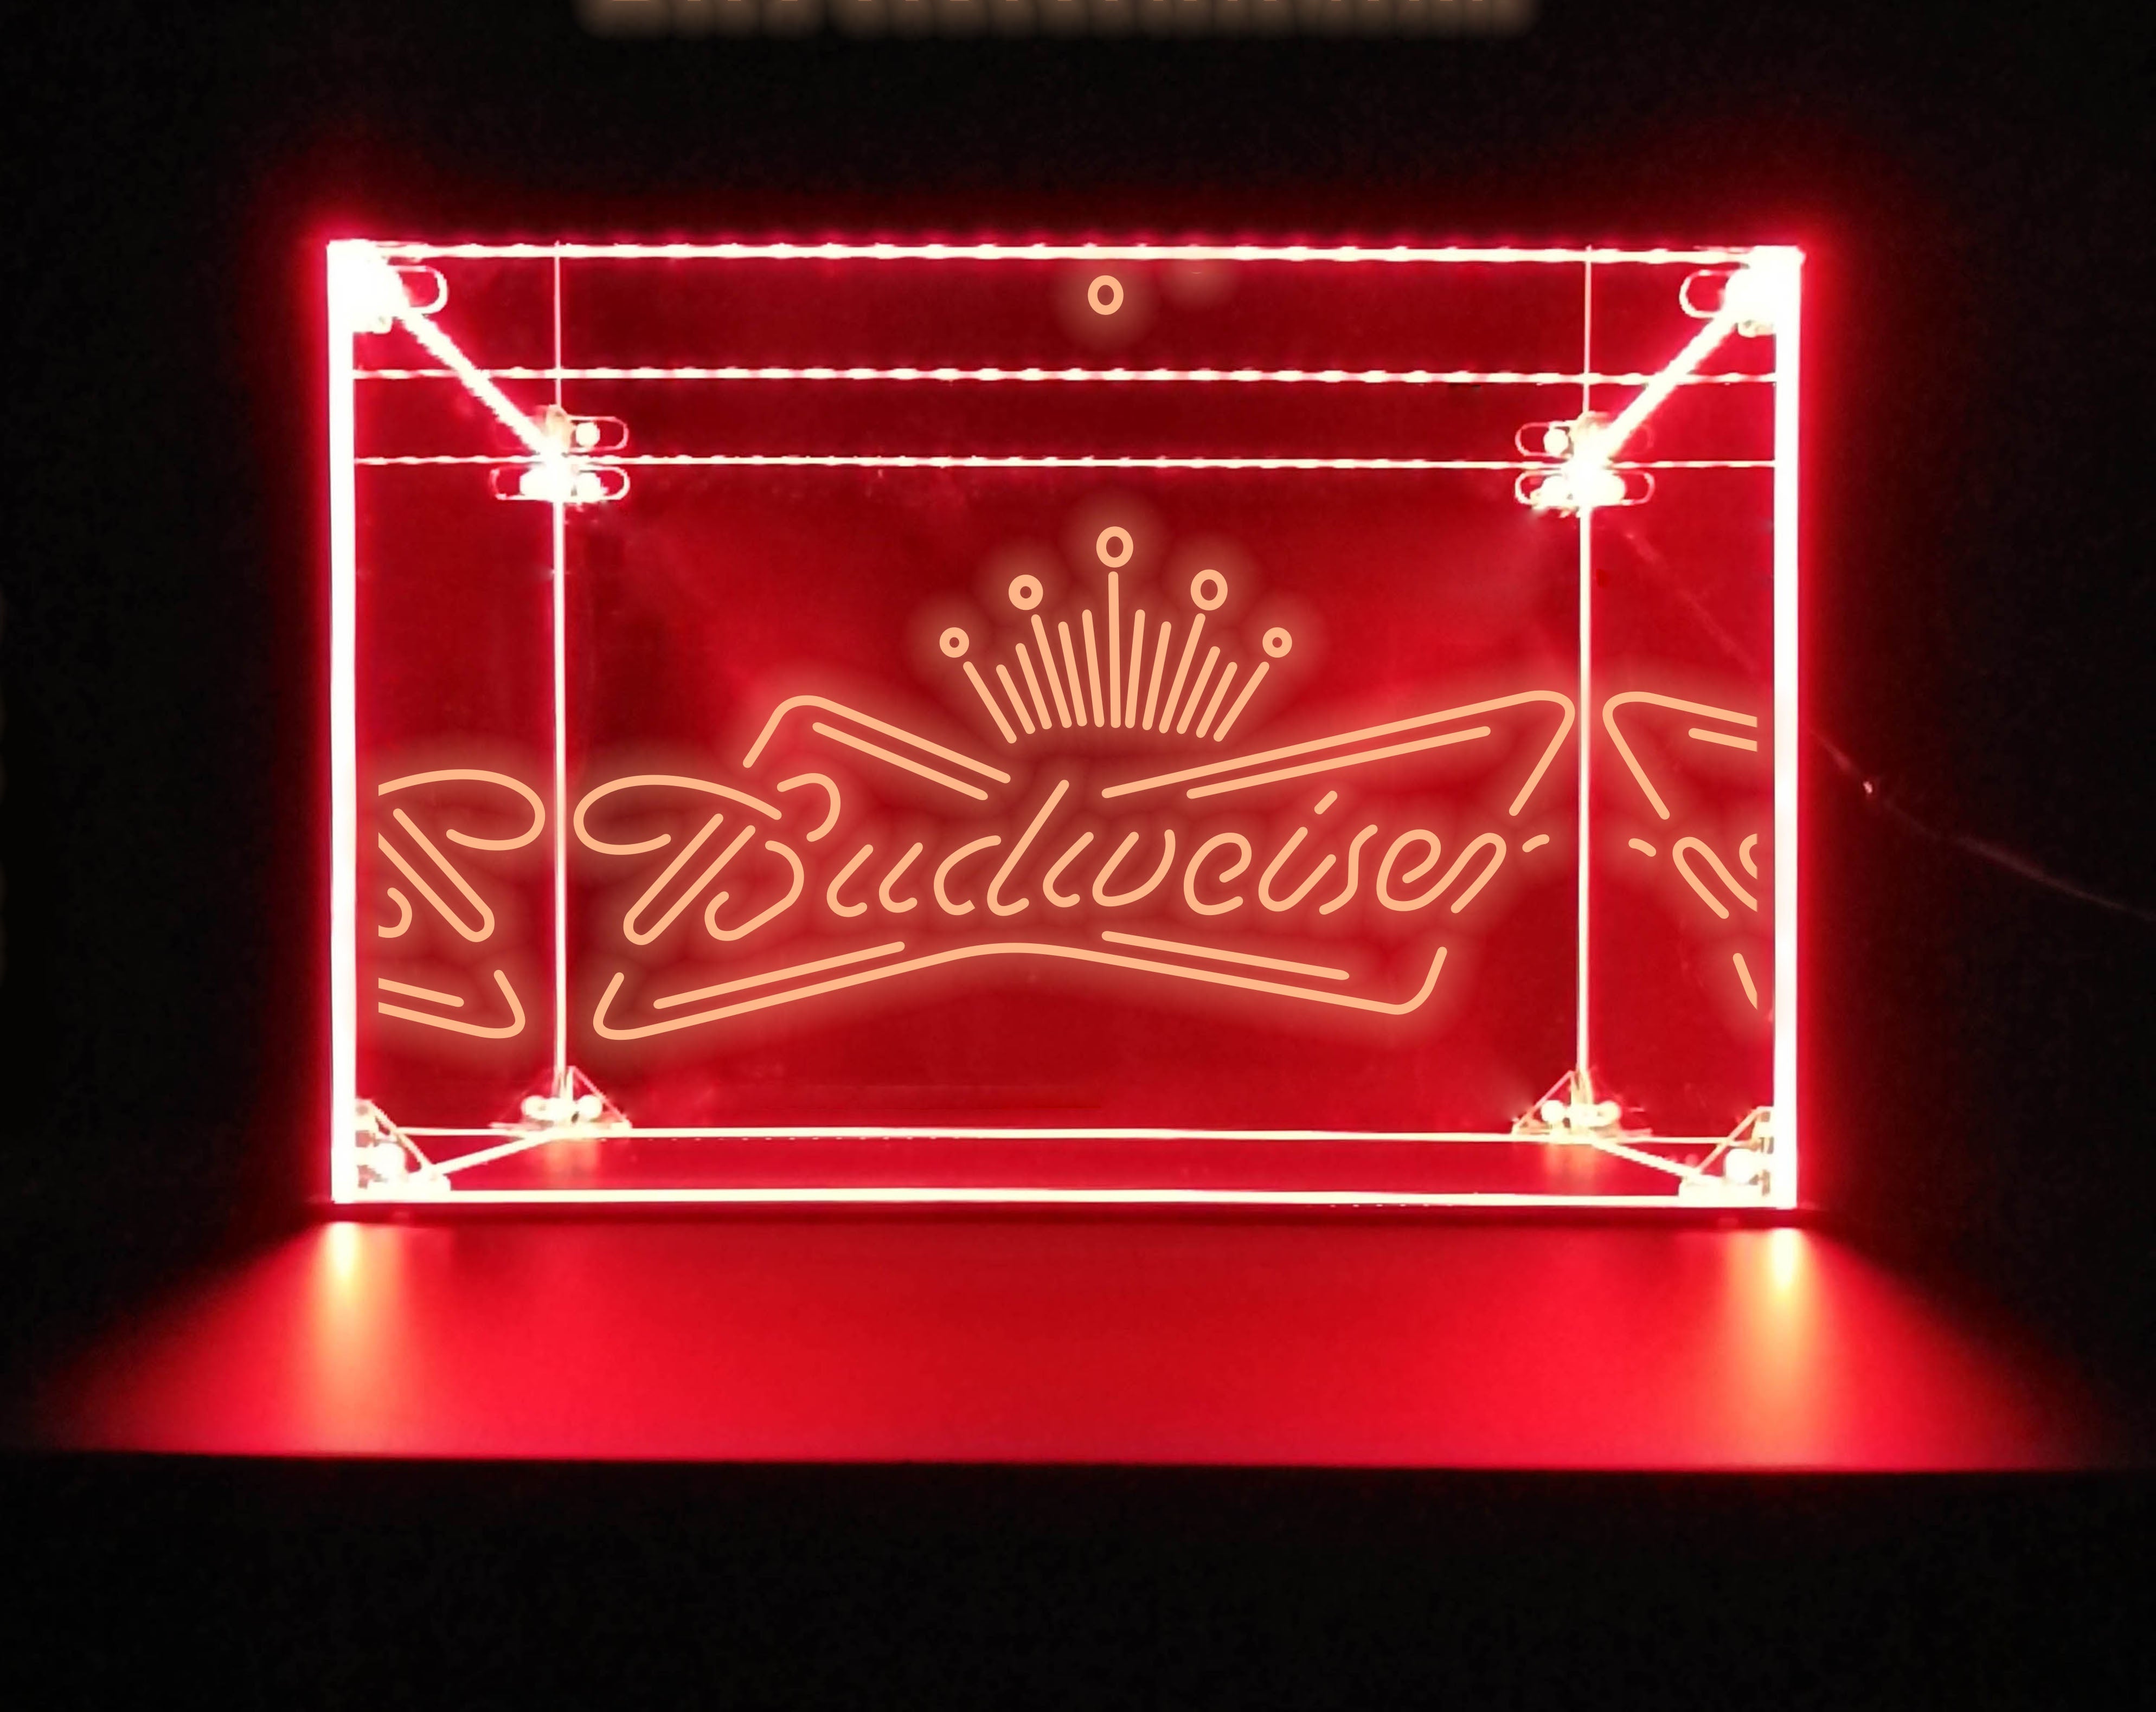 LED Display Case For Budweiser Bar Liquor Bottles